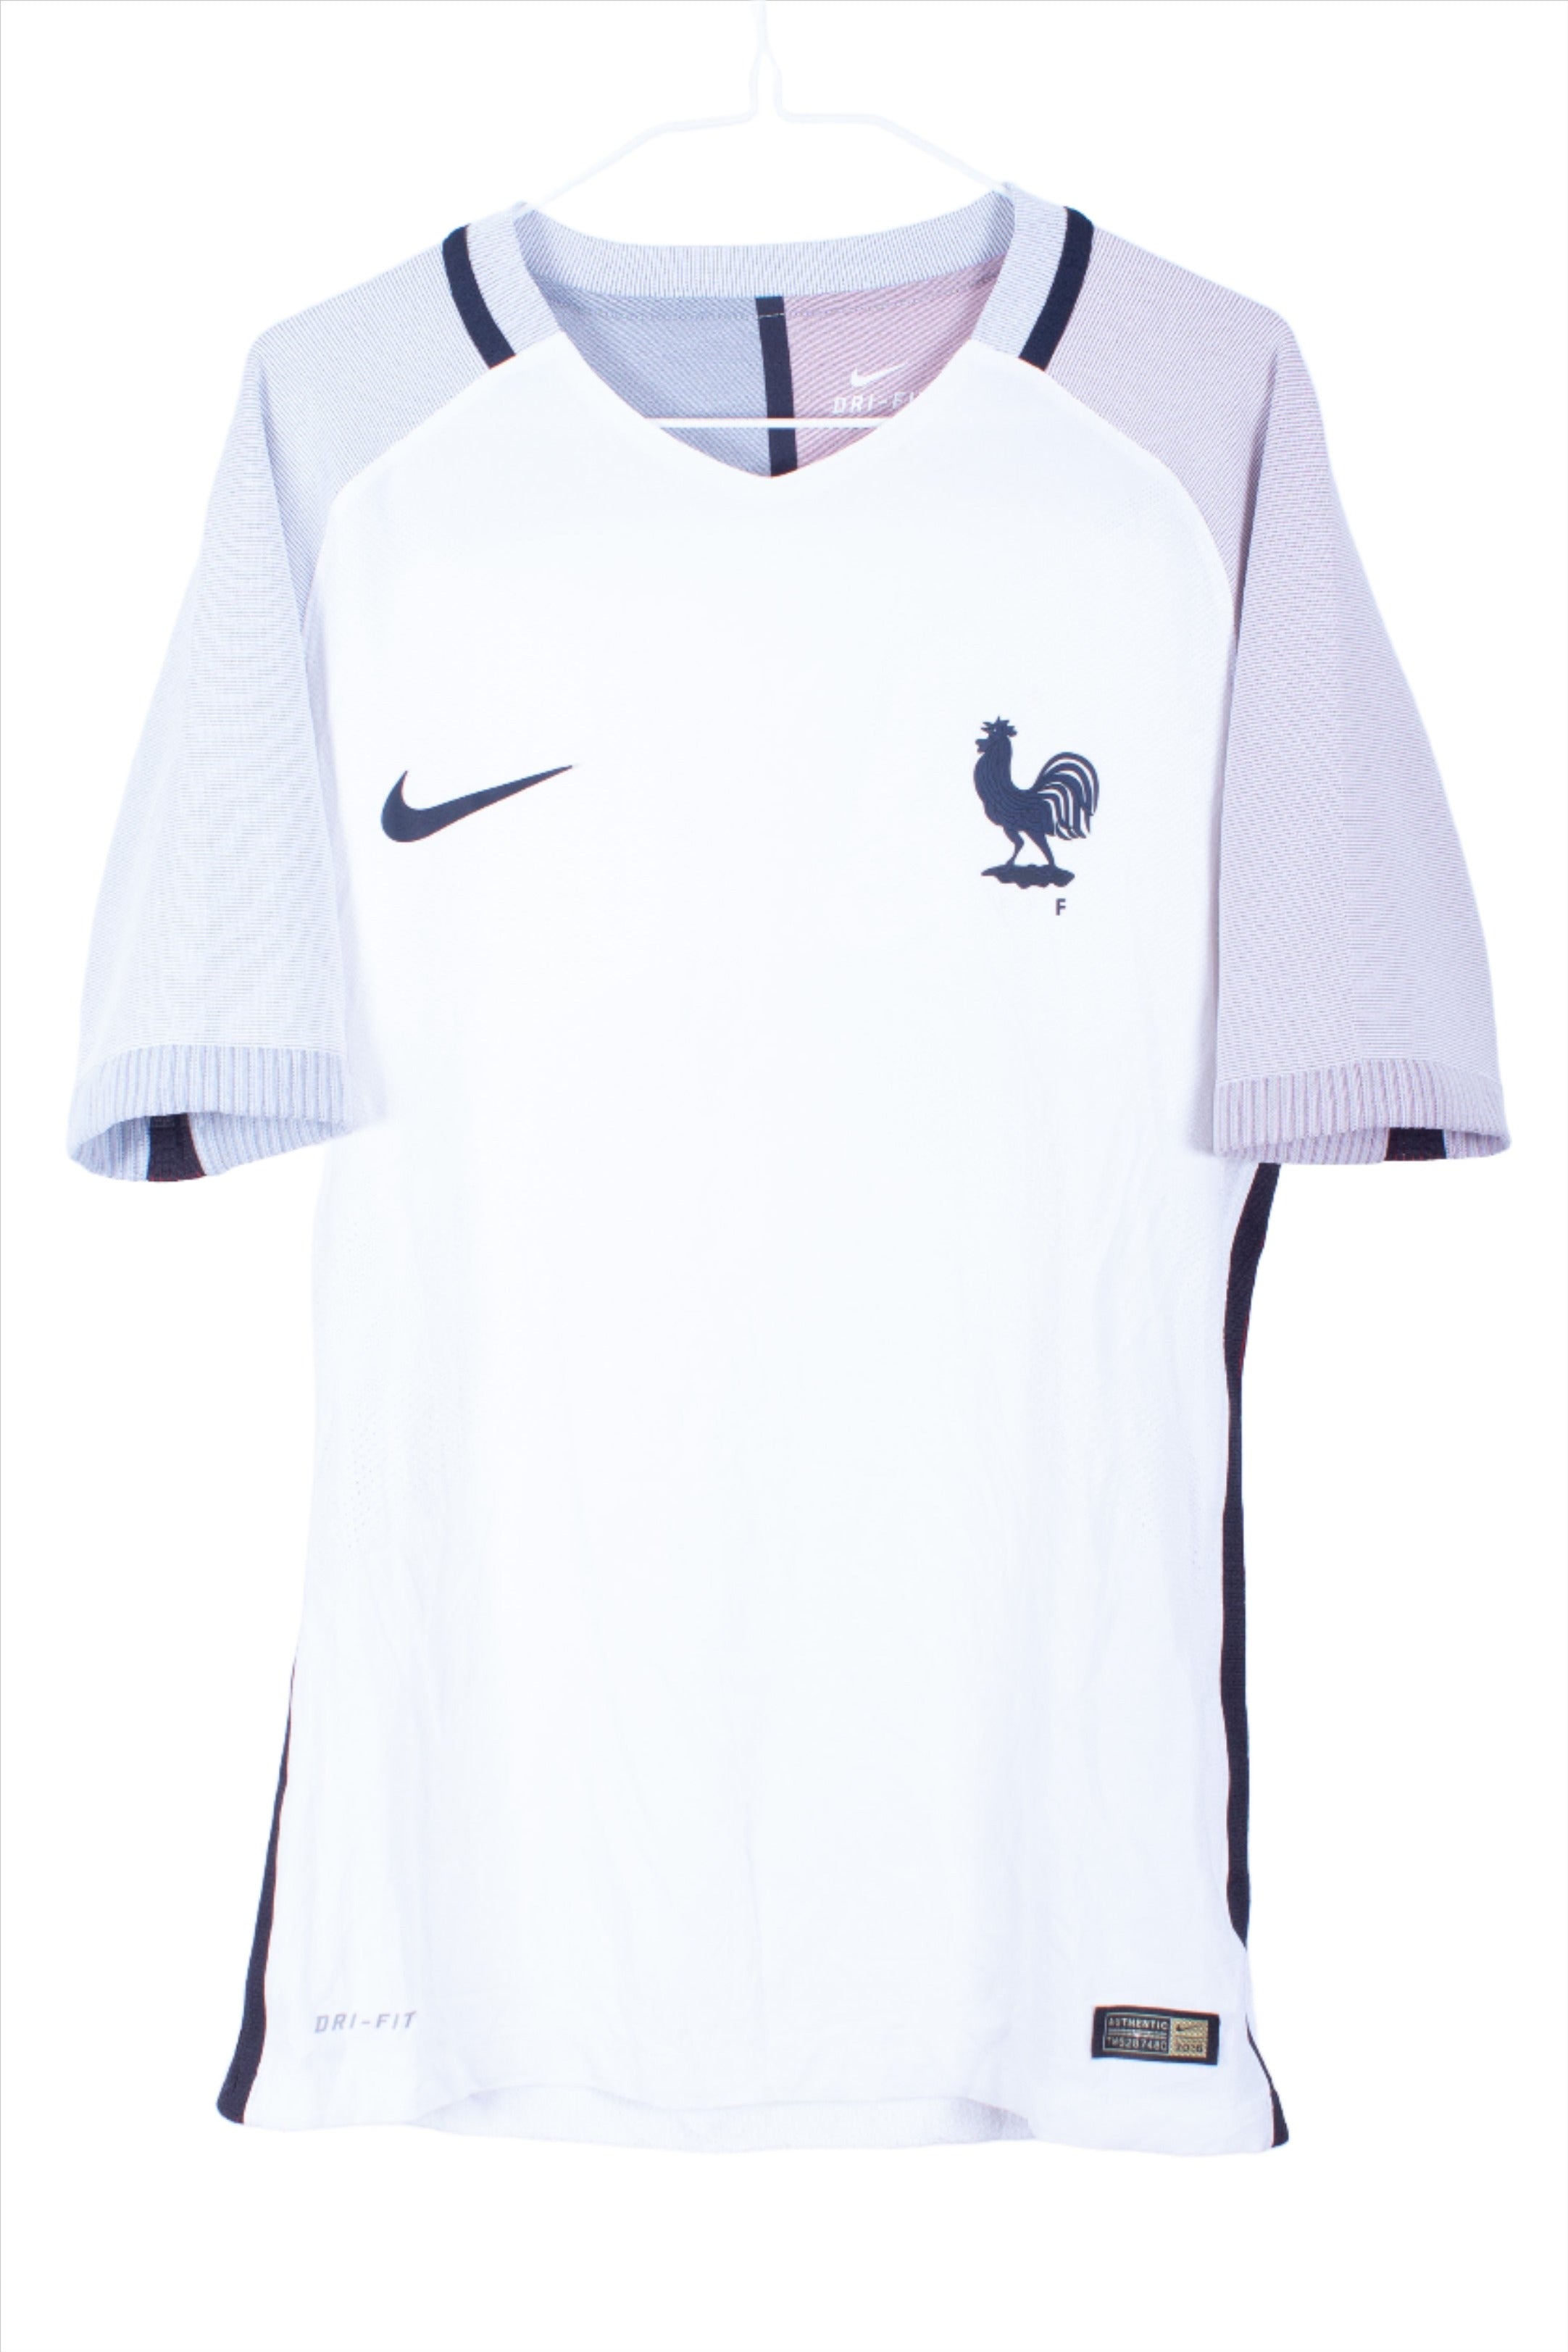 France 2016 *Player Spec* Away Shirt